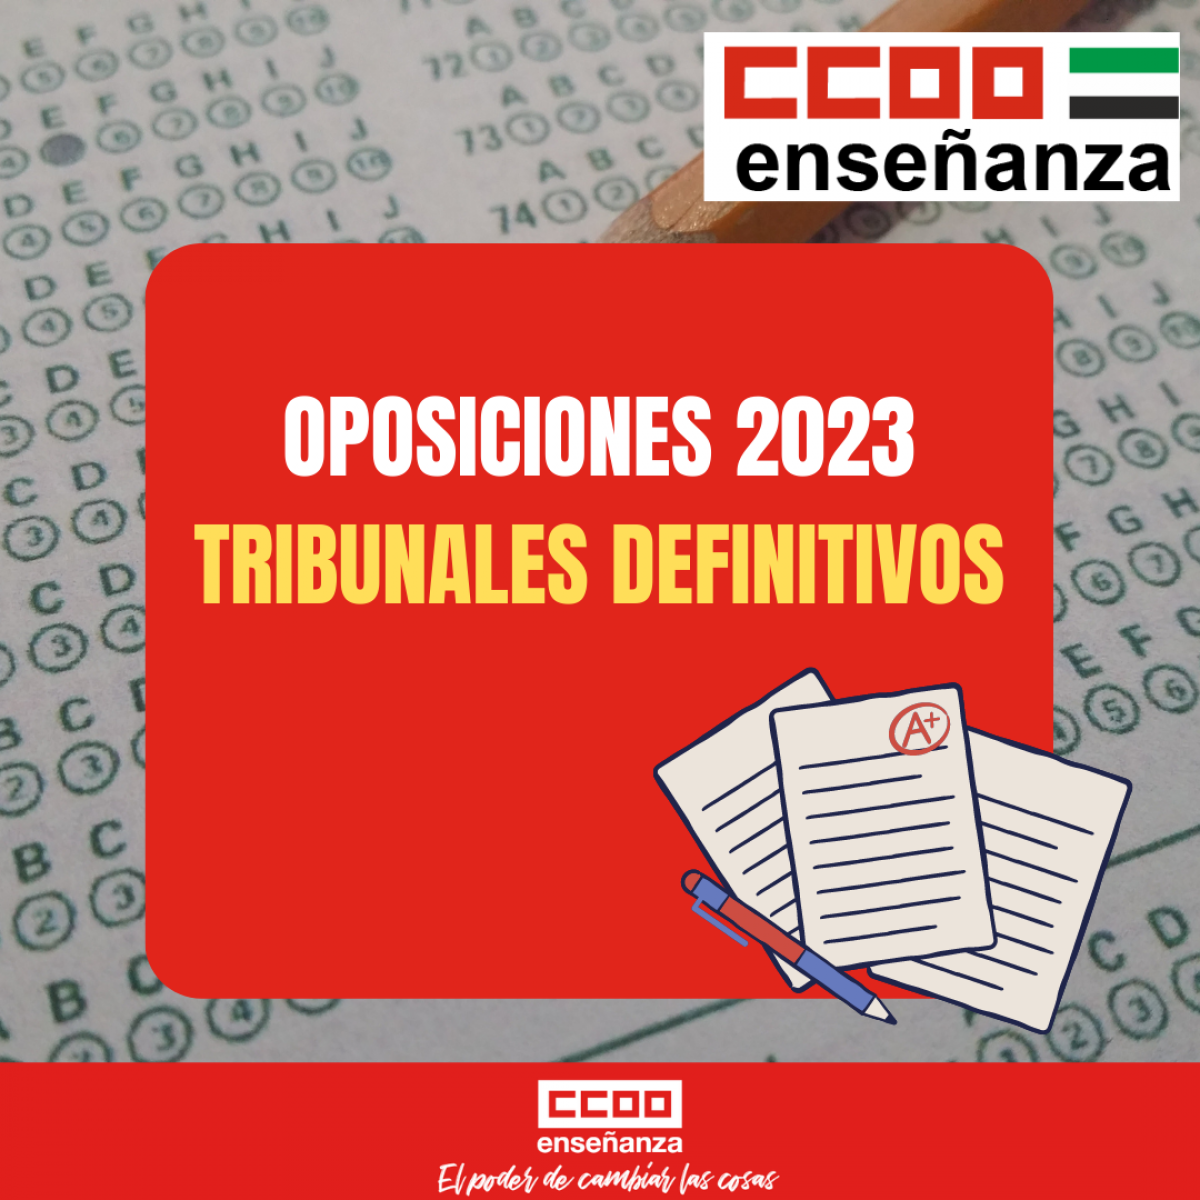 OPOSICIONES 2023: TRIBUNALES DEFINITIVOS